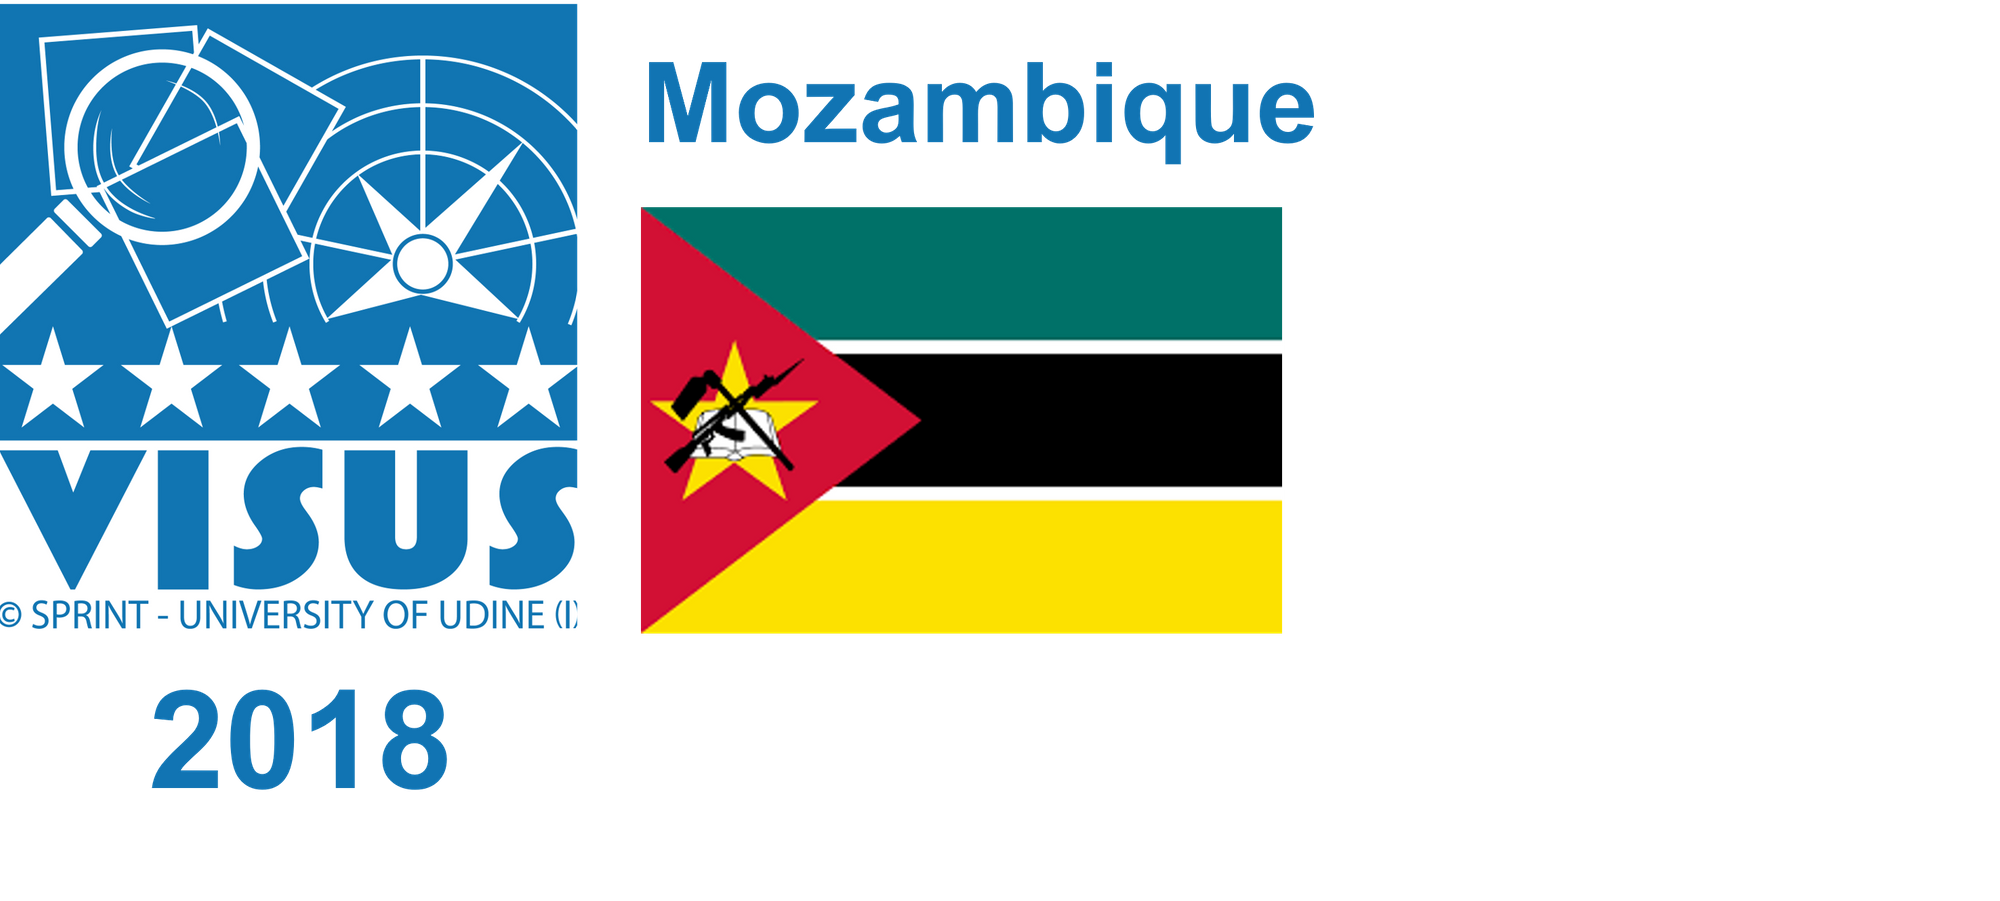 Mozambique, 2018